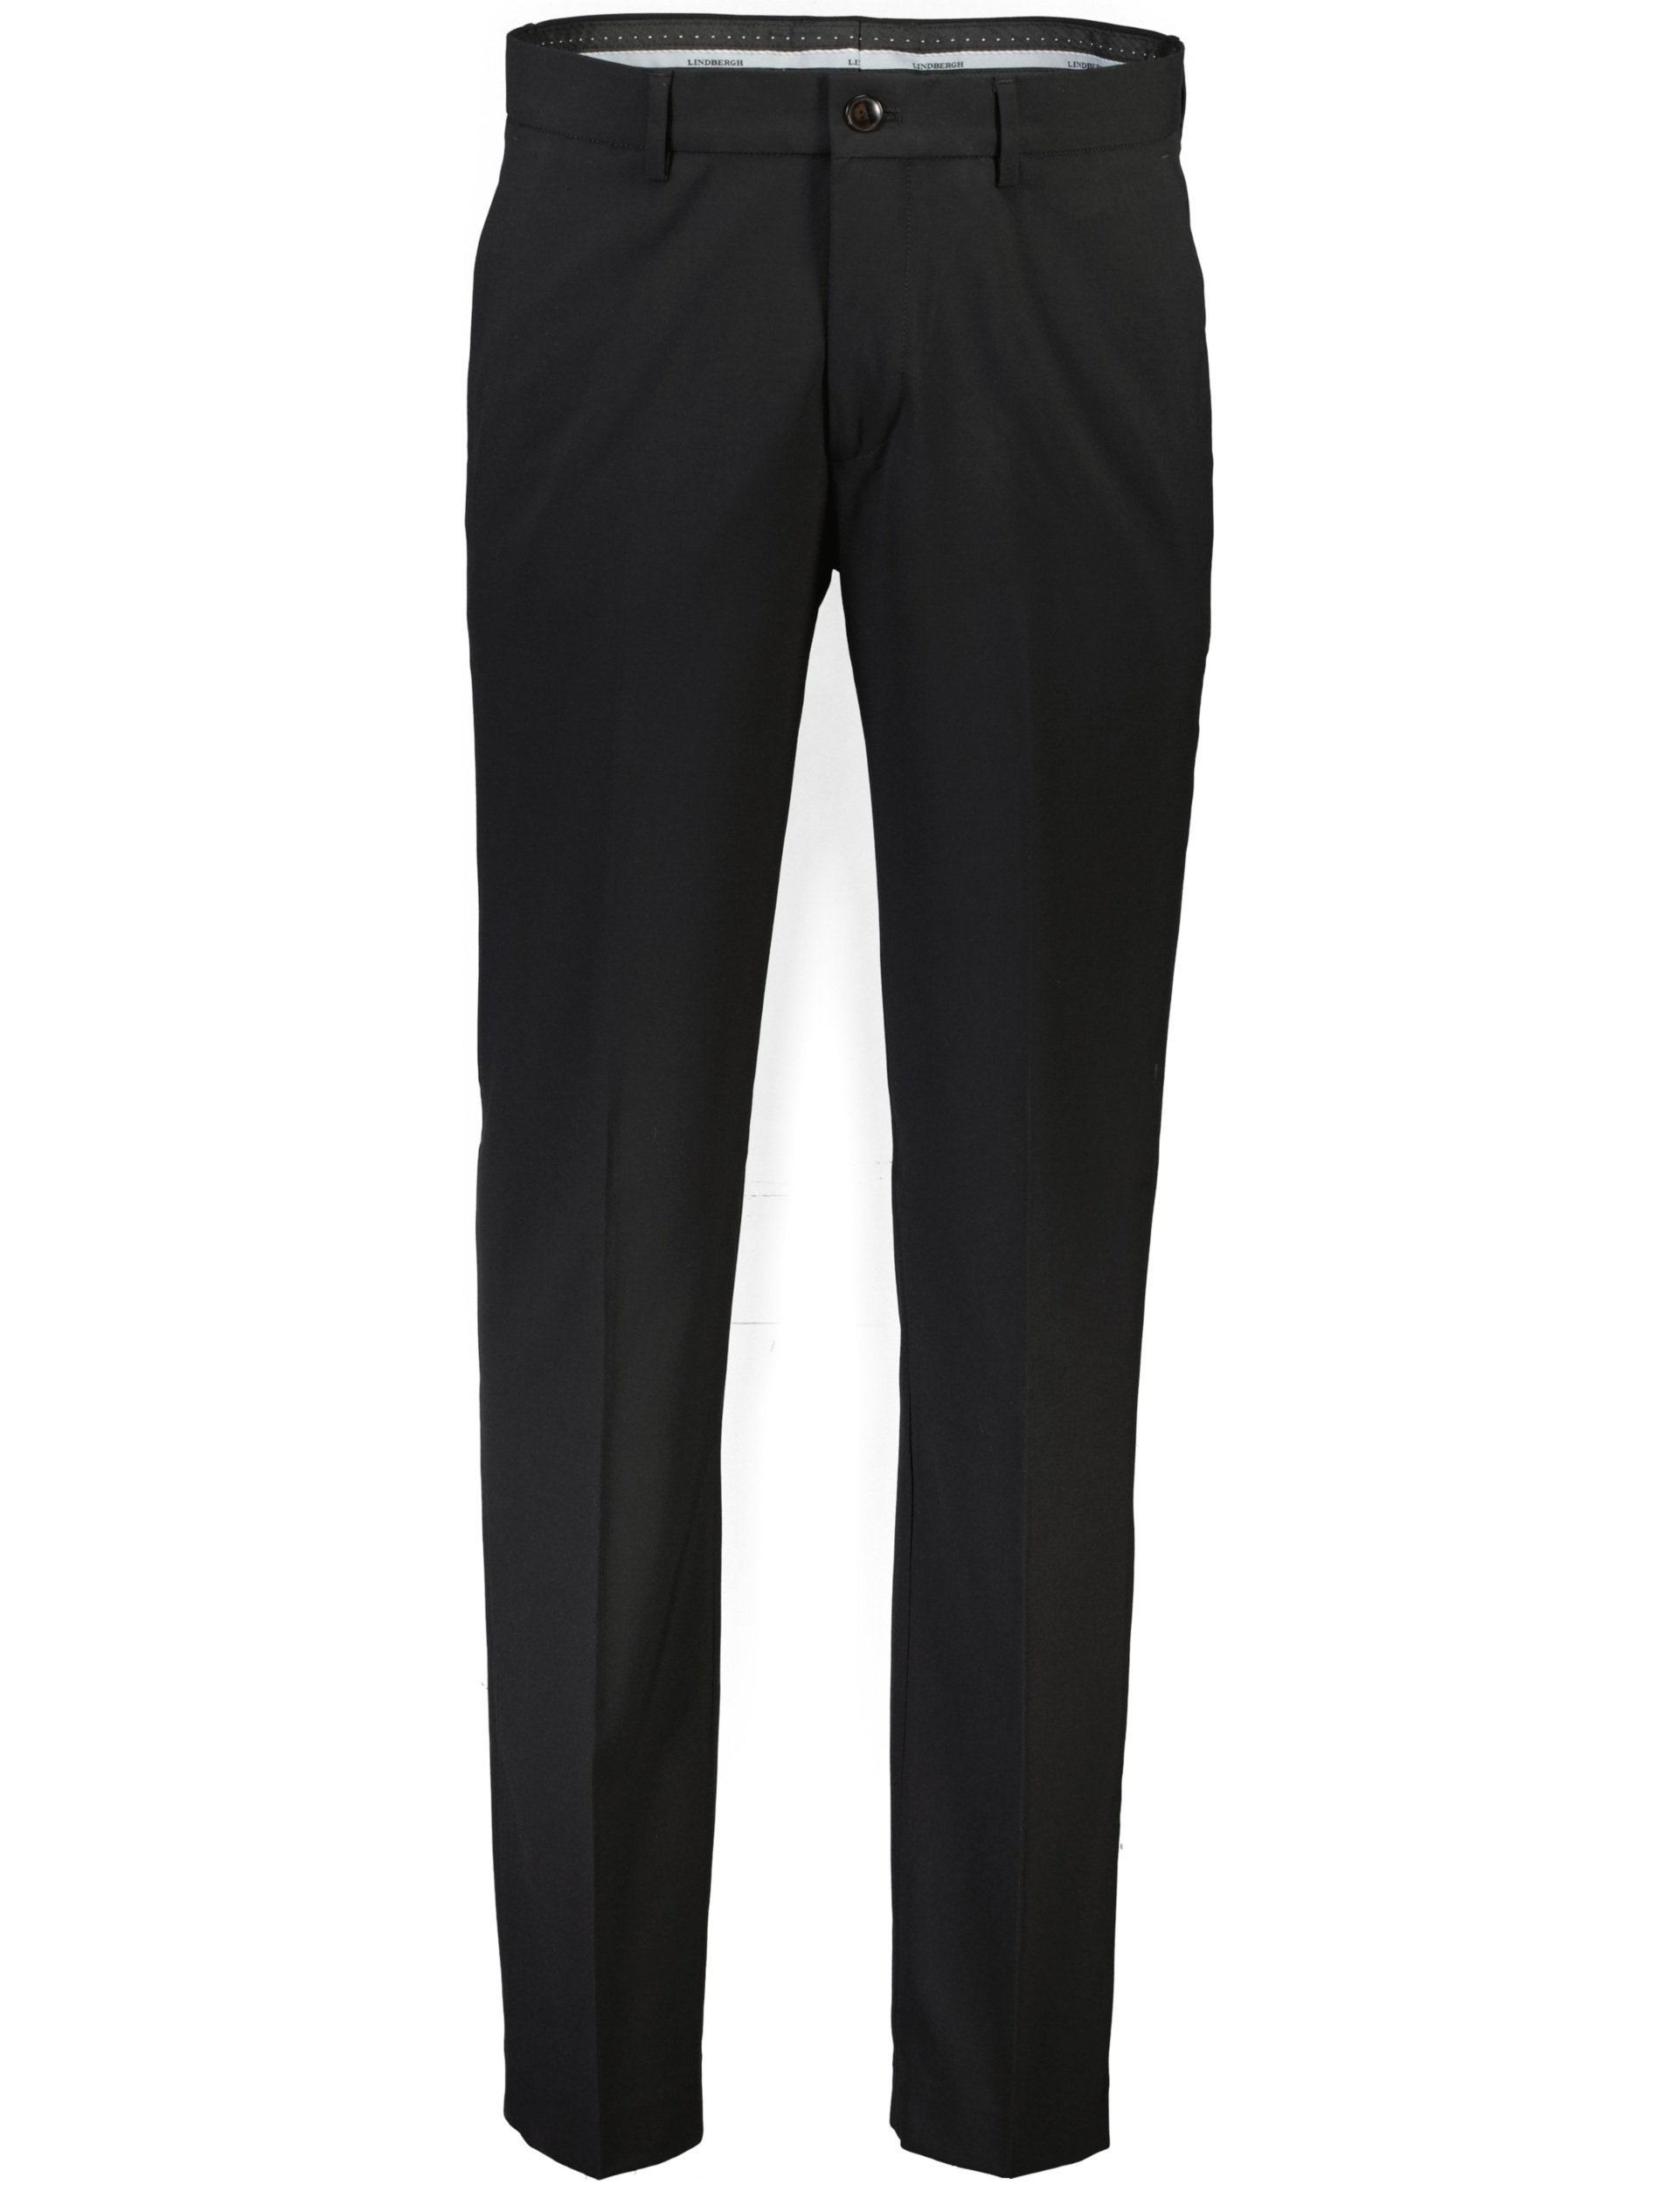 Lindbergh Suit pants black / black